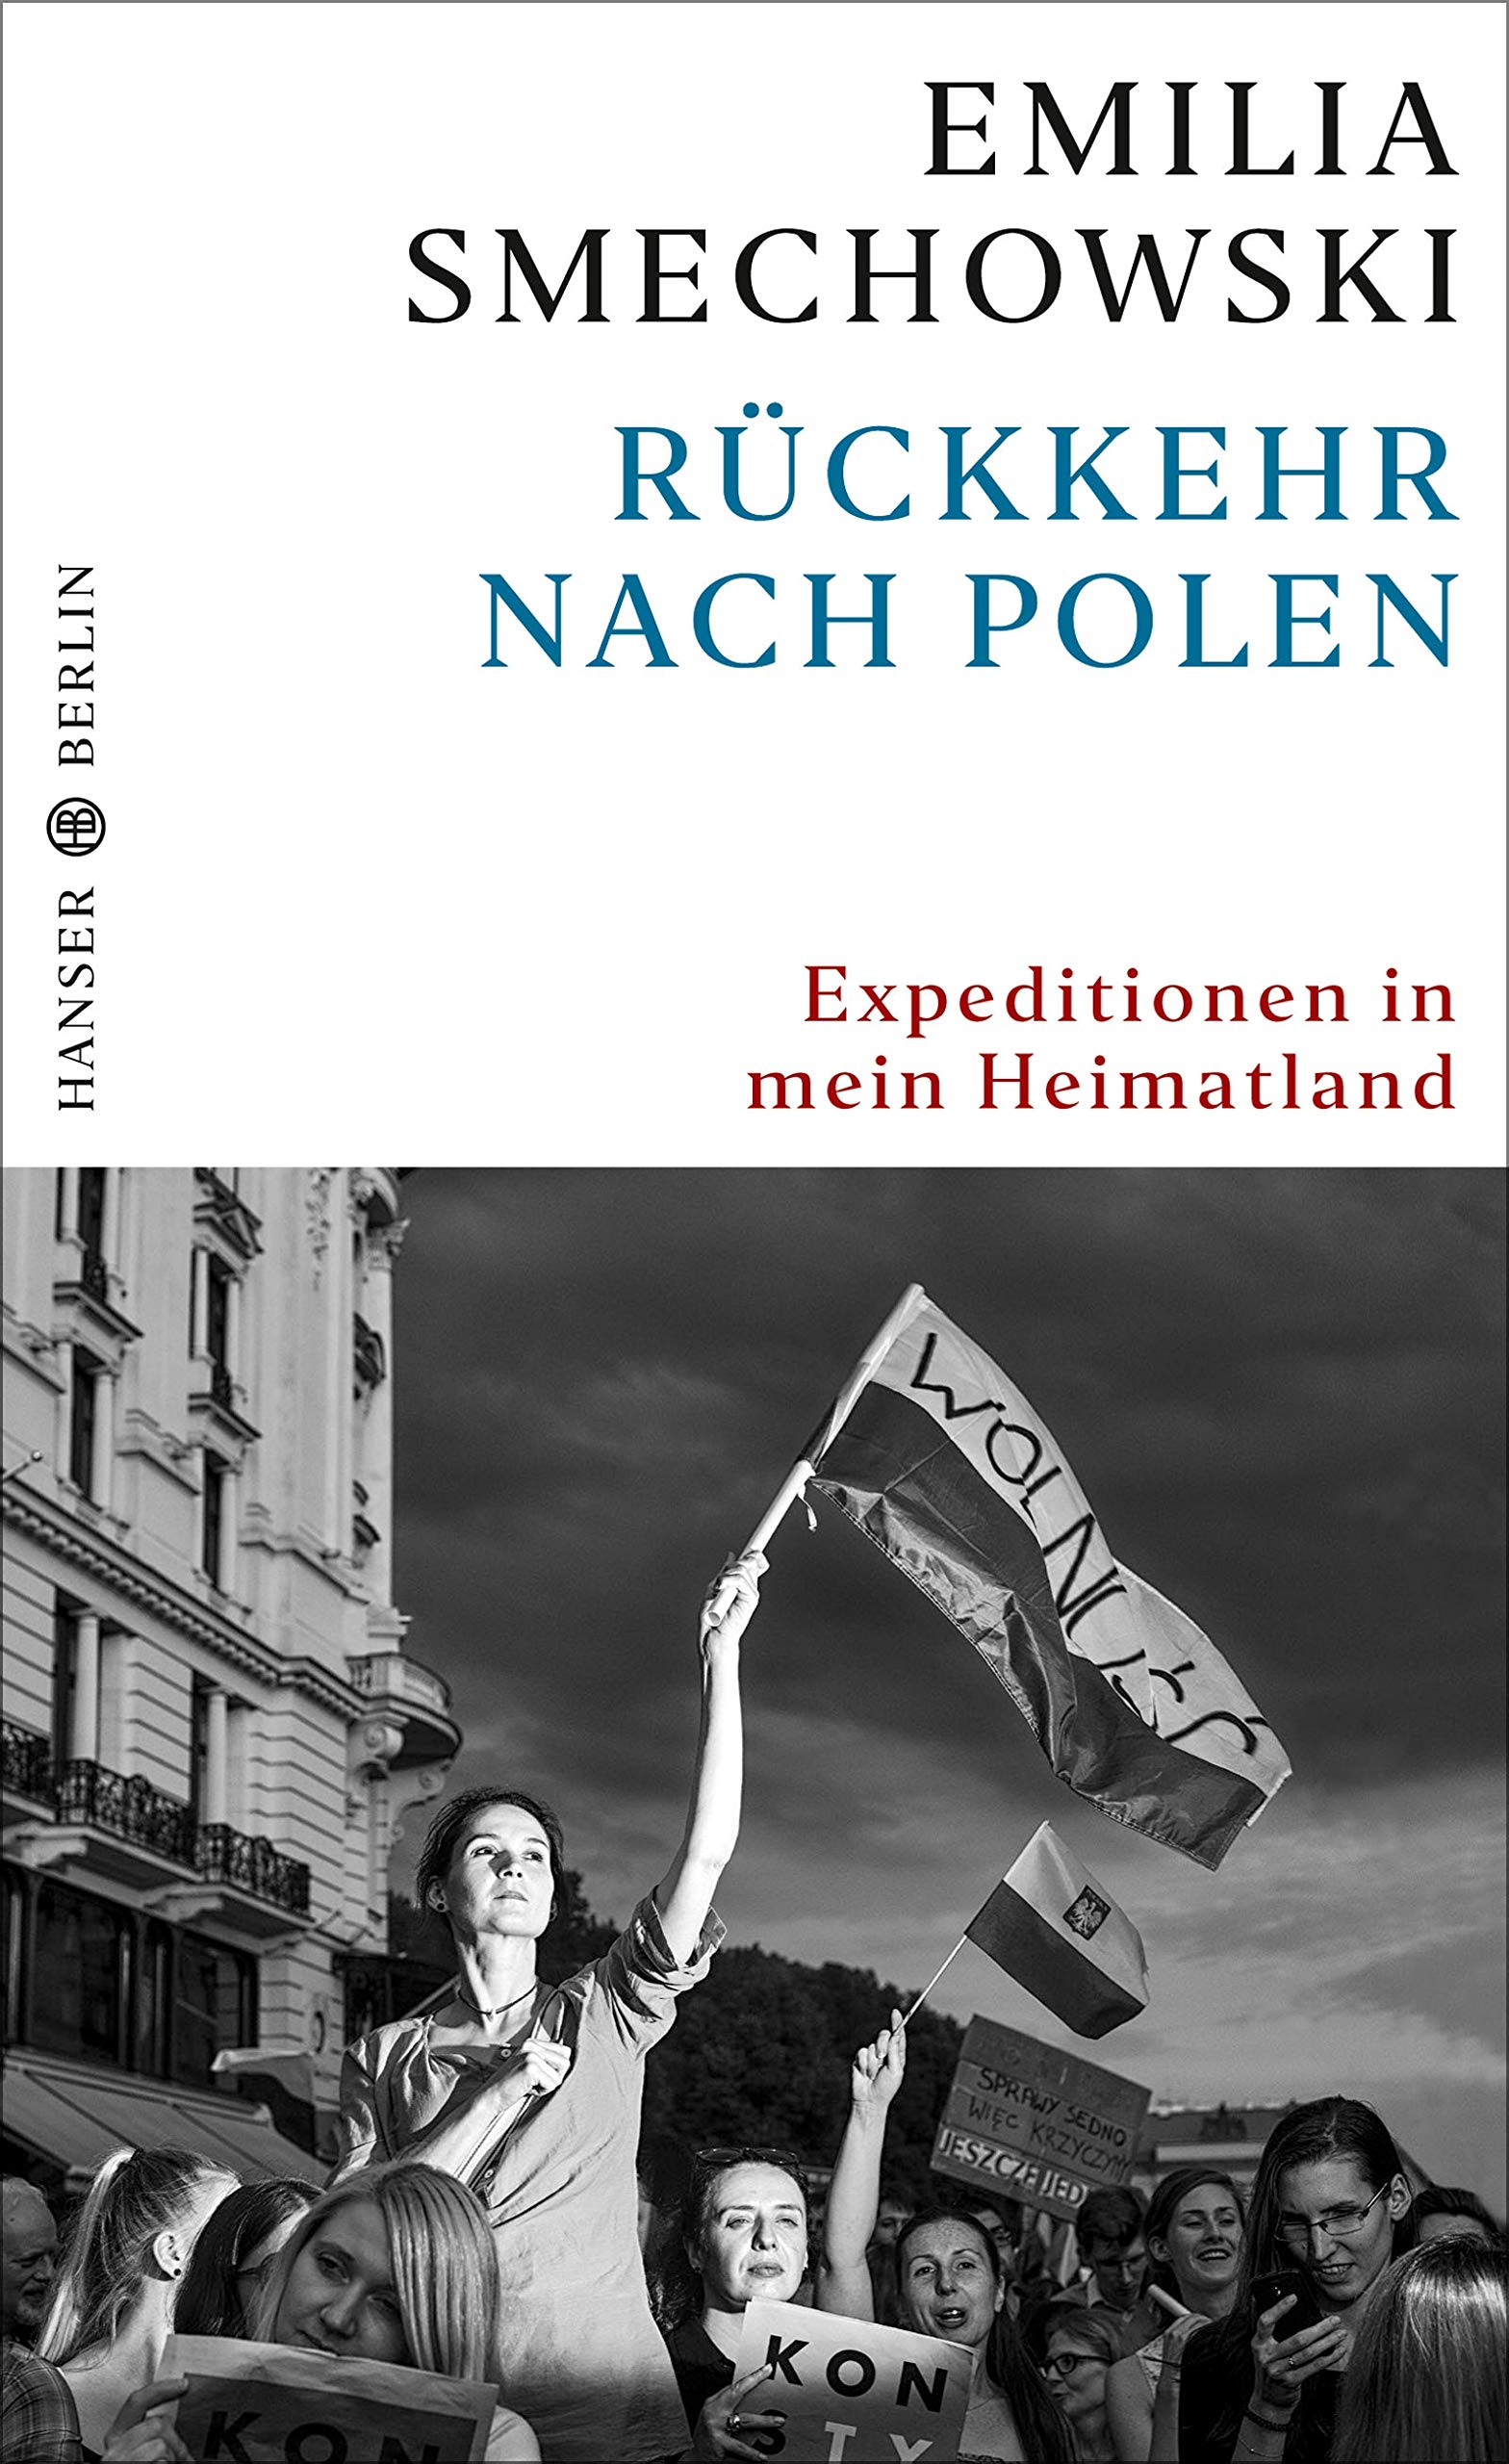 Emilia Smechowski: Rückkehr nach Polen (Hardcover, 2019, Hanser Berlin)